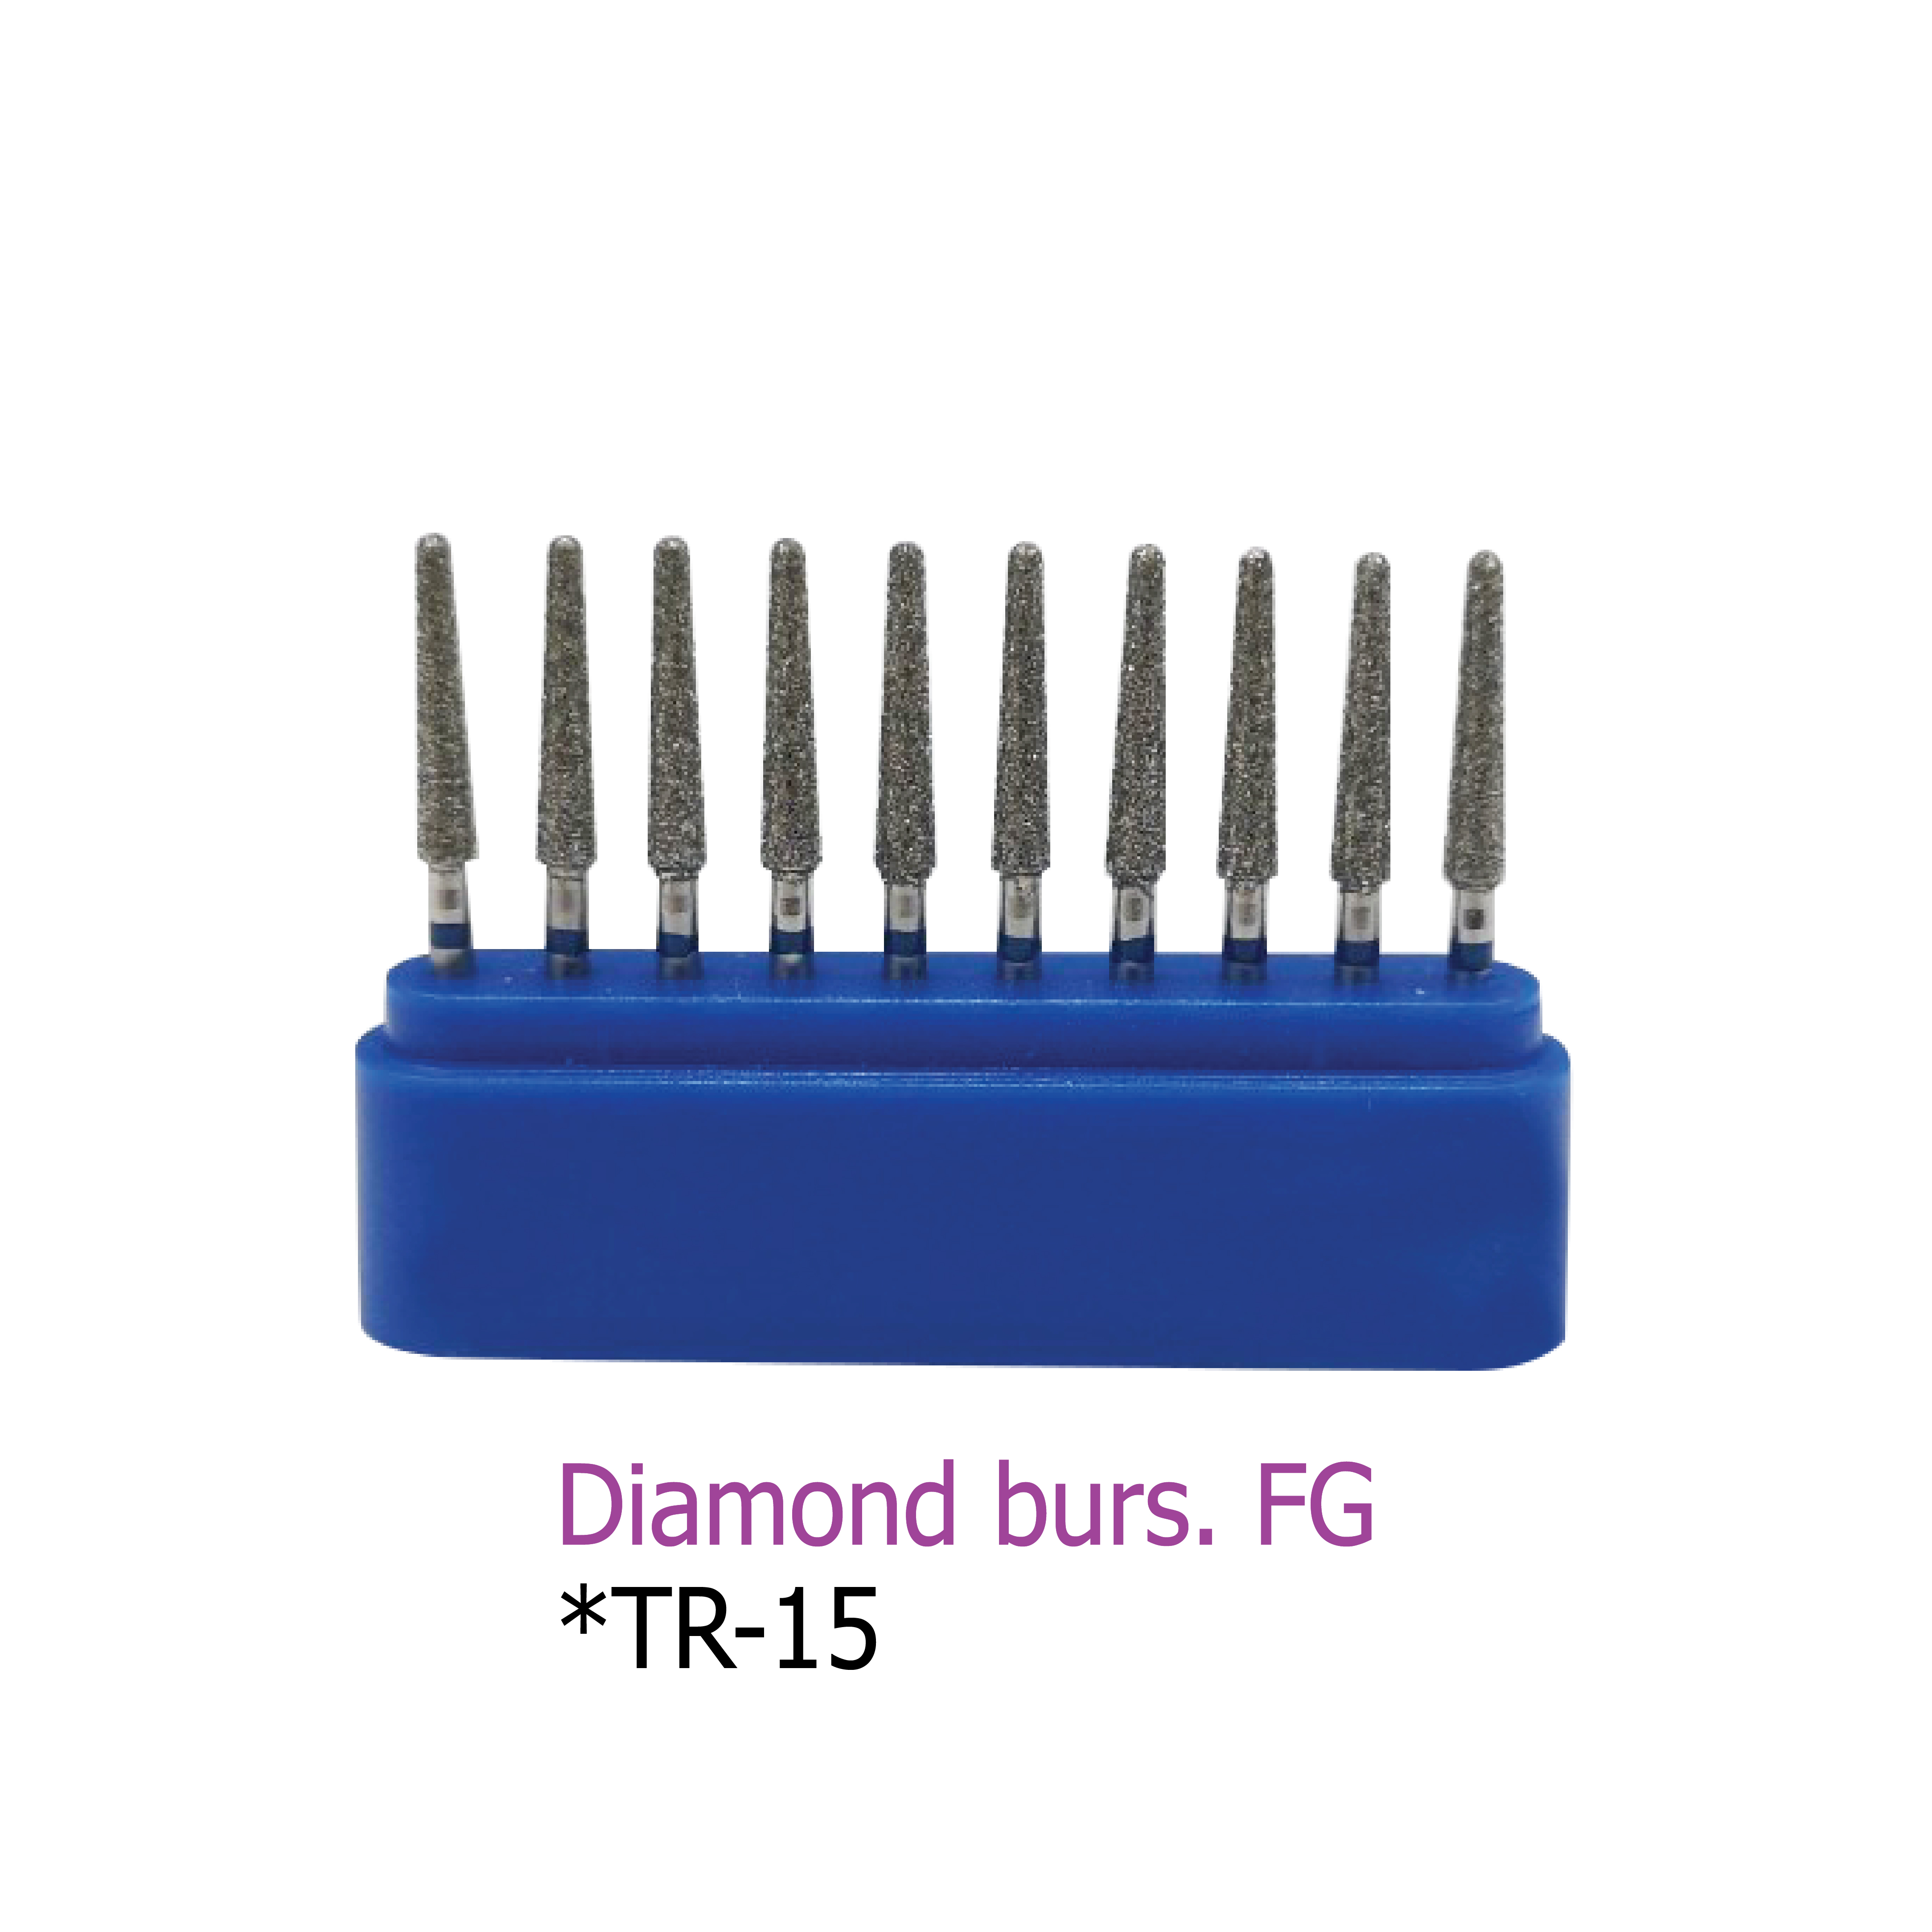 Diamond burs. FG *TR-15